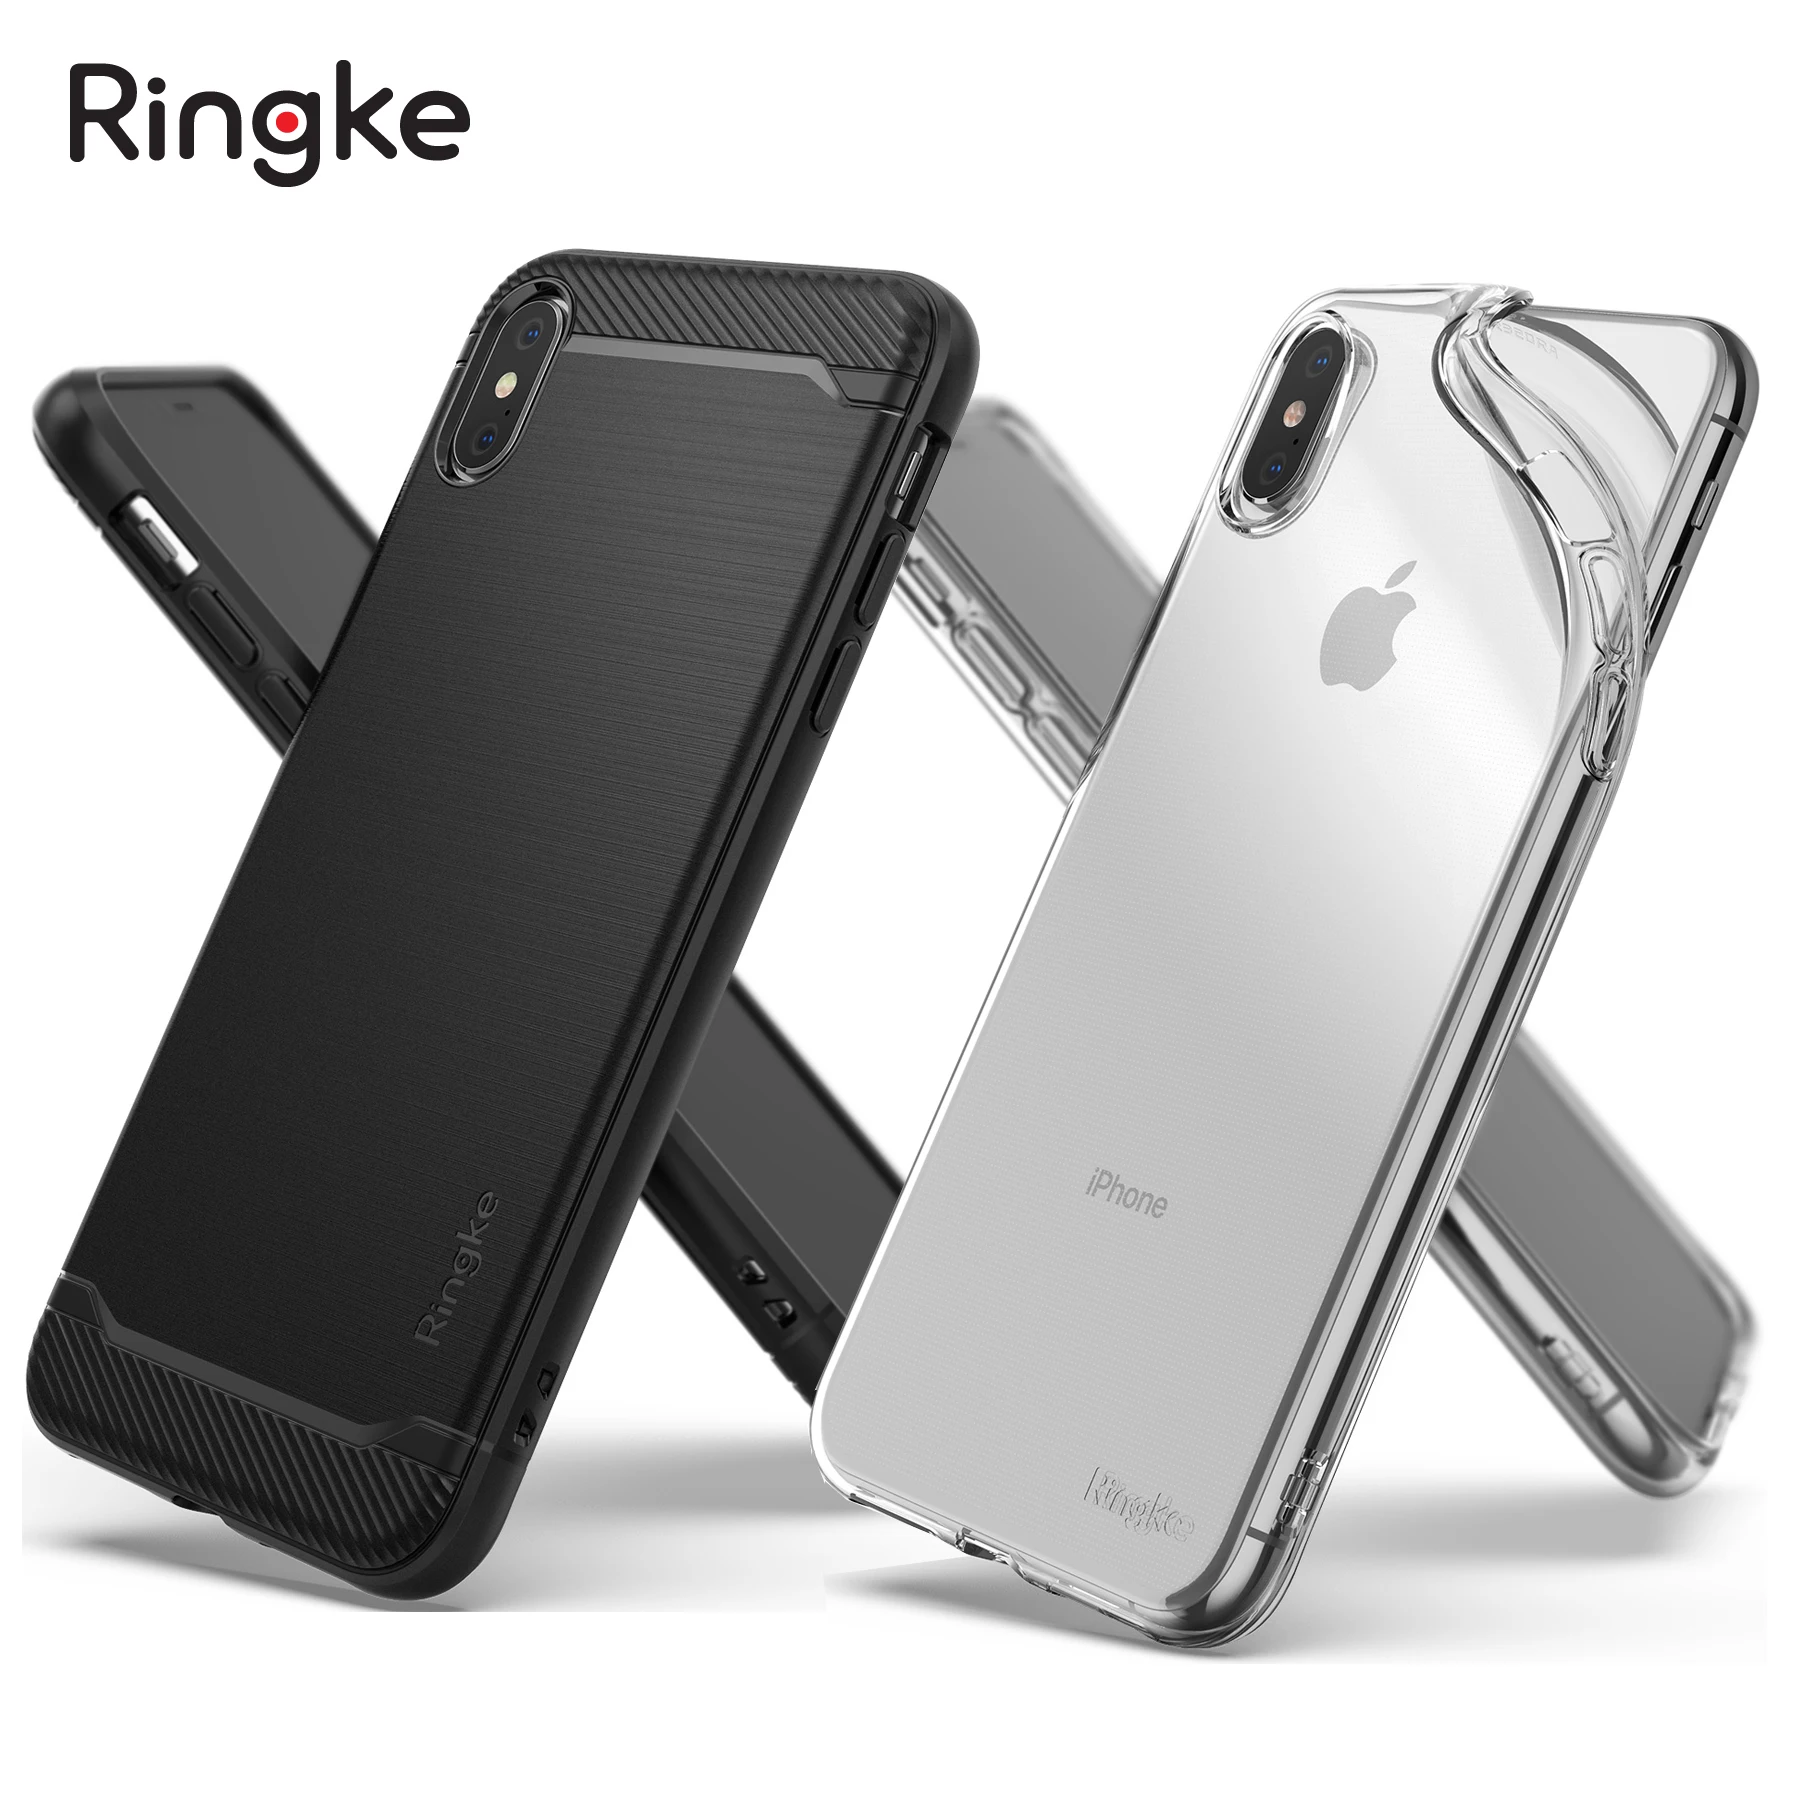 100% Оригинальные Rearth Ringke Onyx/Ringke Air гибкие Прочные мягкие ТПУ чехлы для iPhone XS Max/XS/XR |